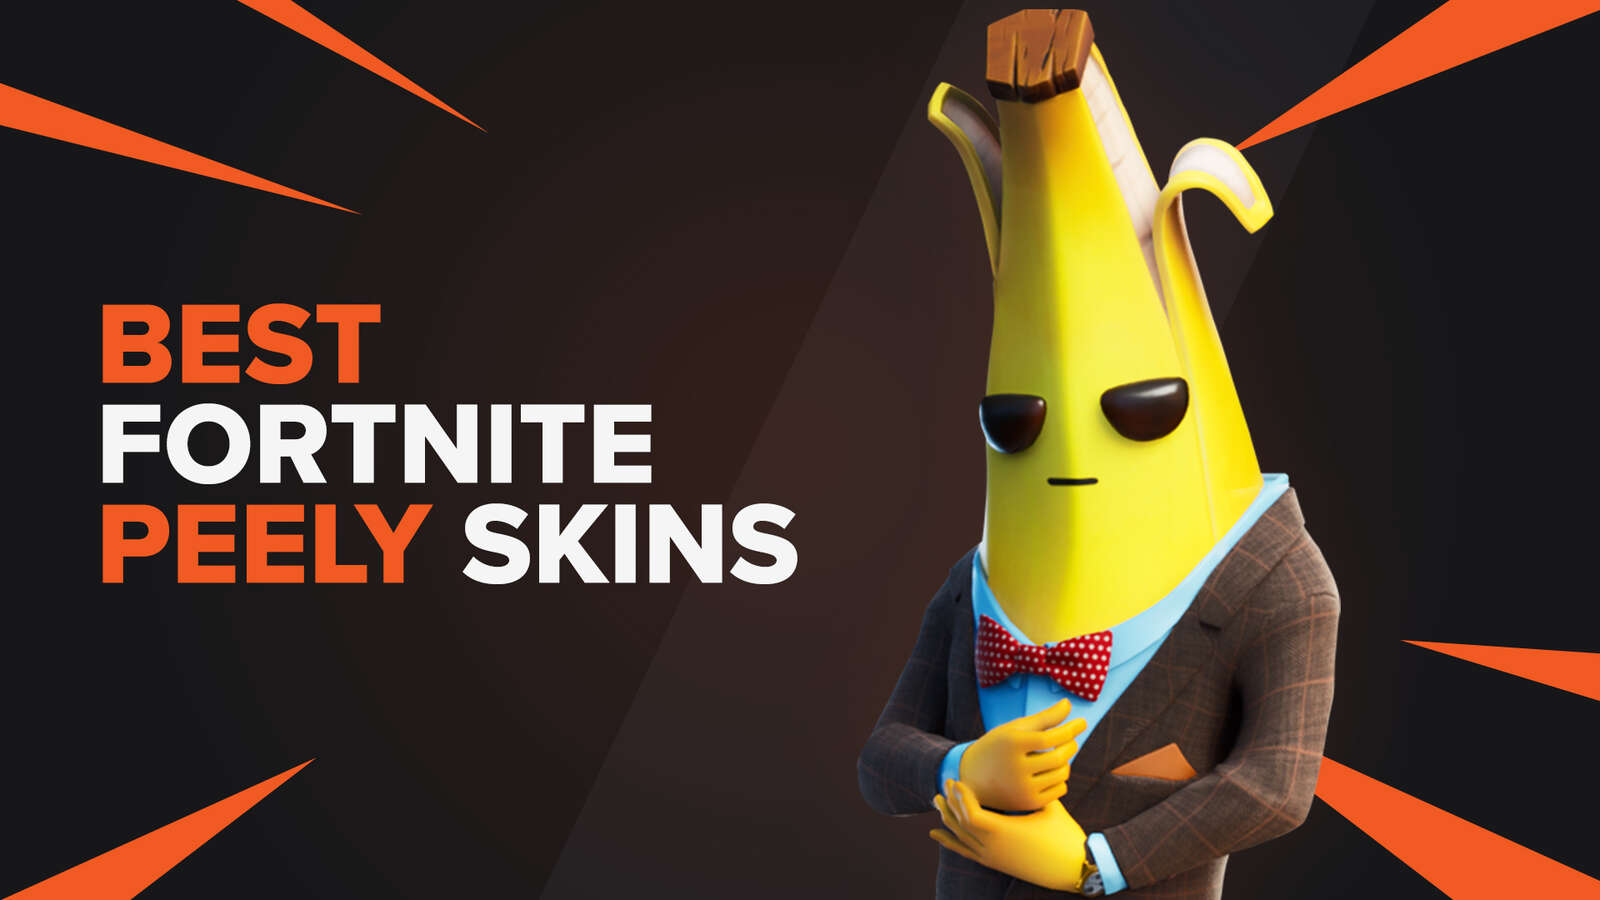 Fortnite's Finest Peely Banana Skins